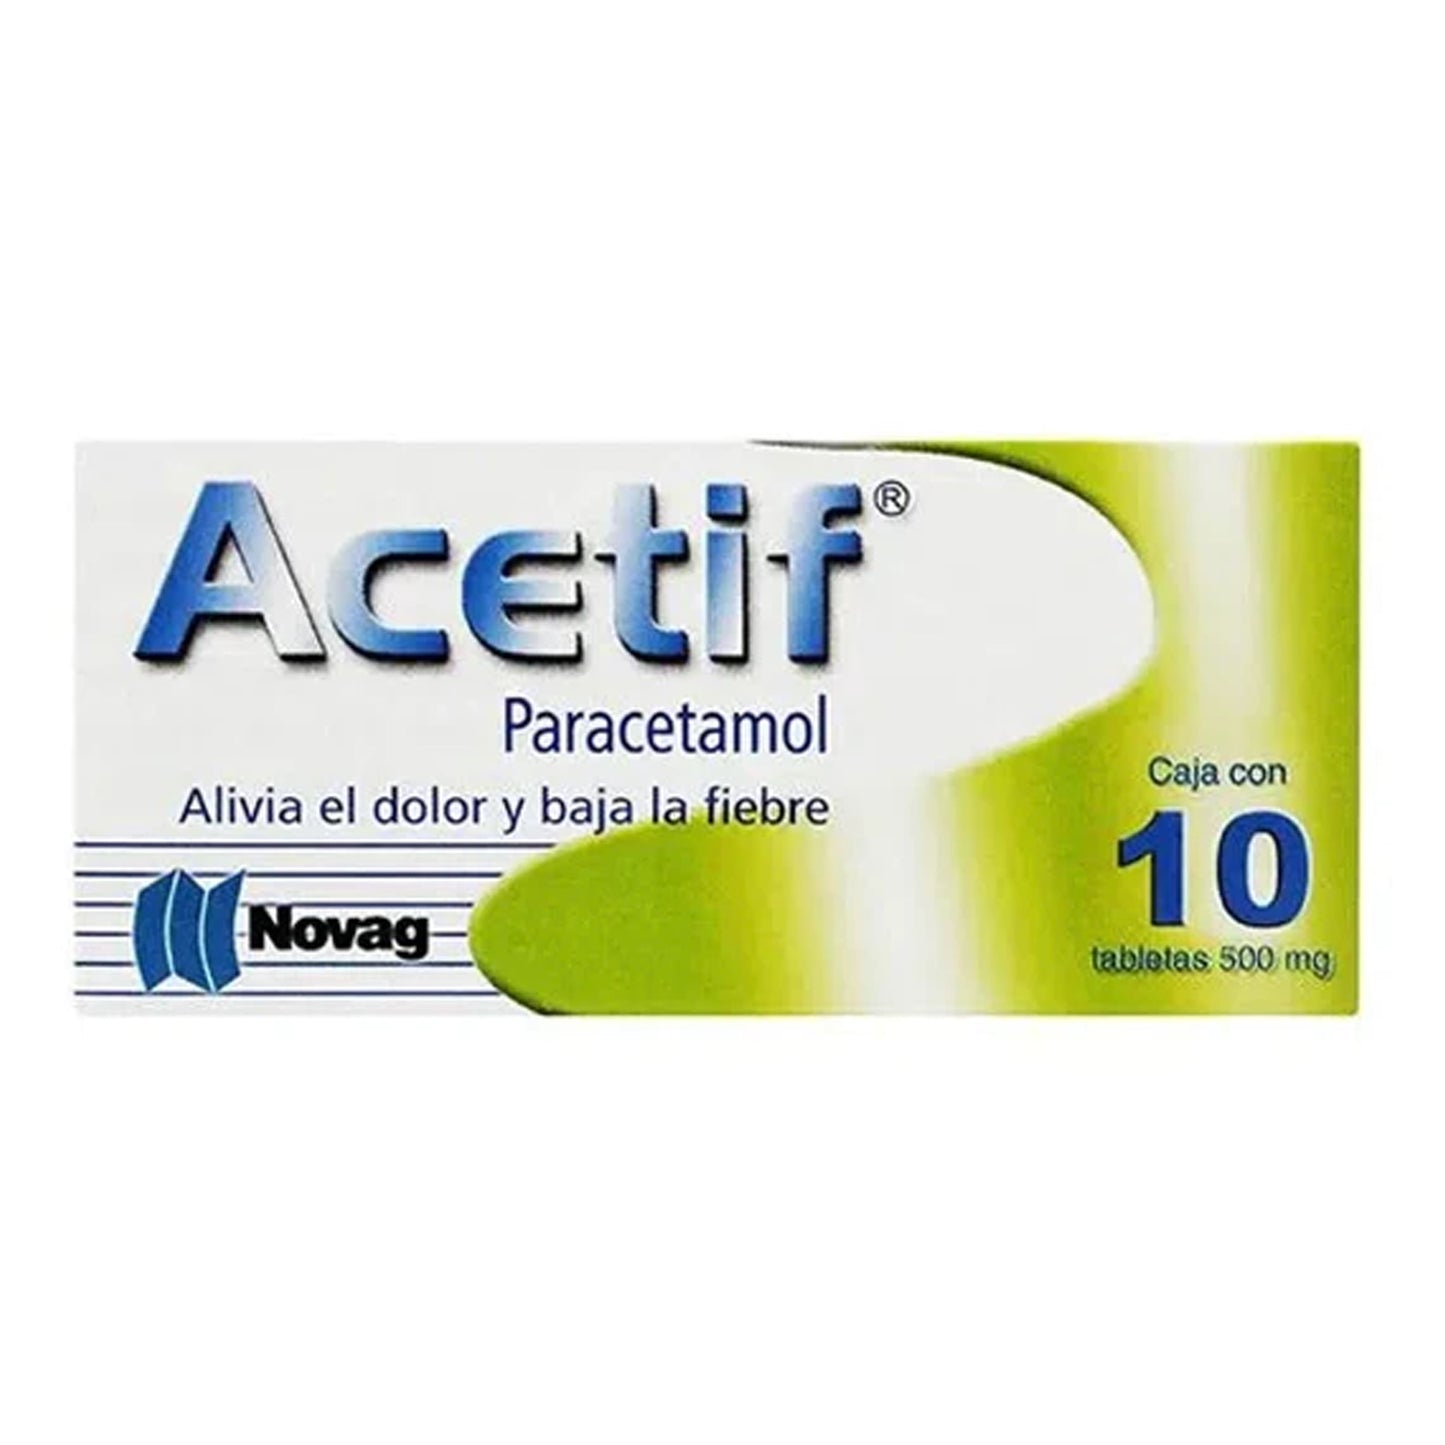 Paracetamol 500 mg, marca Acetif, caja con 10 Tabletas.